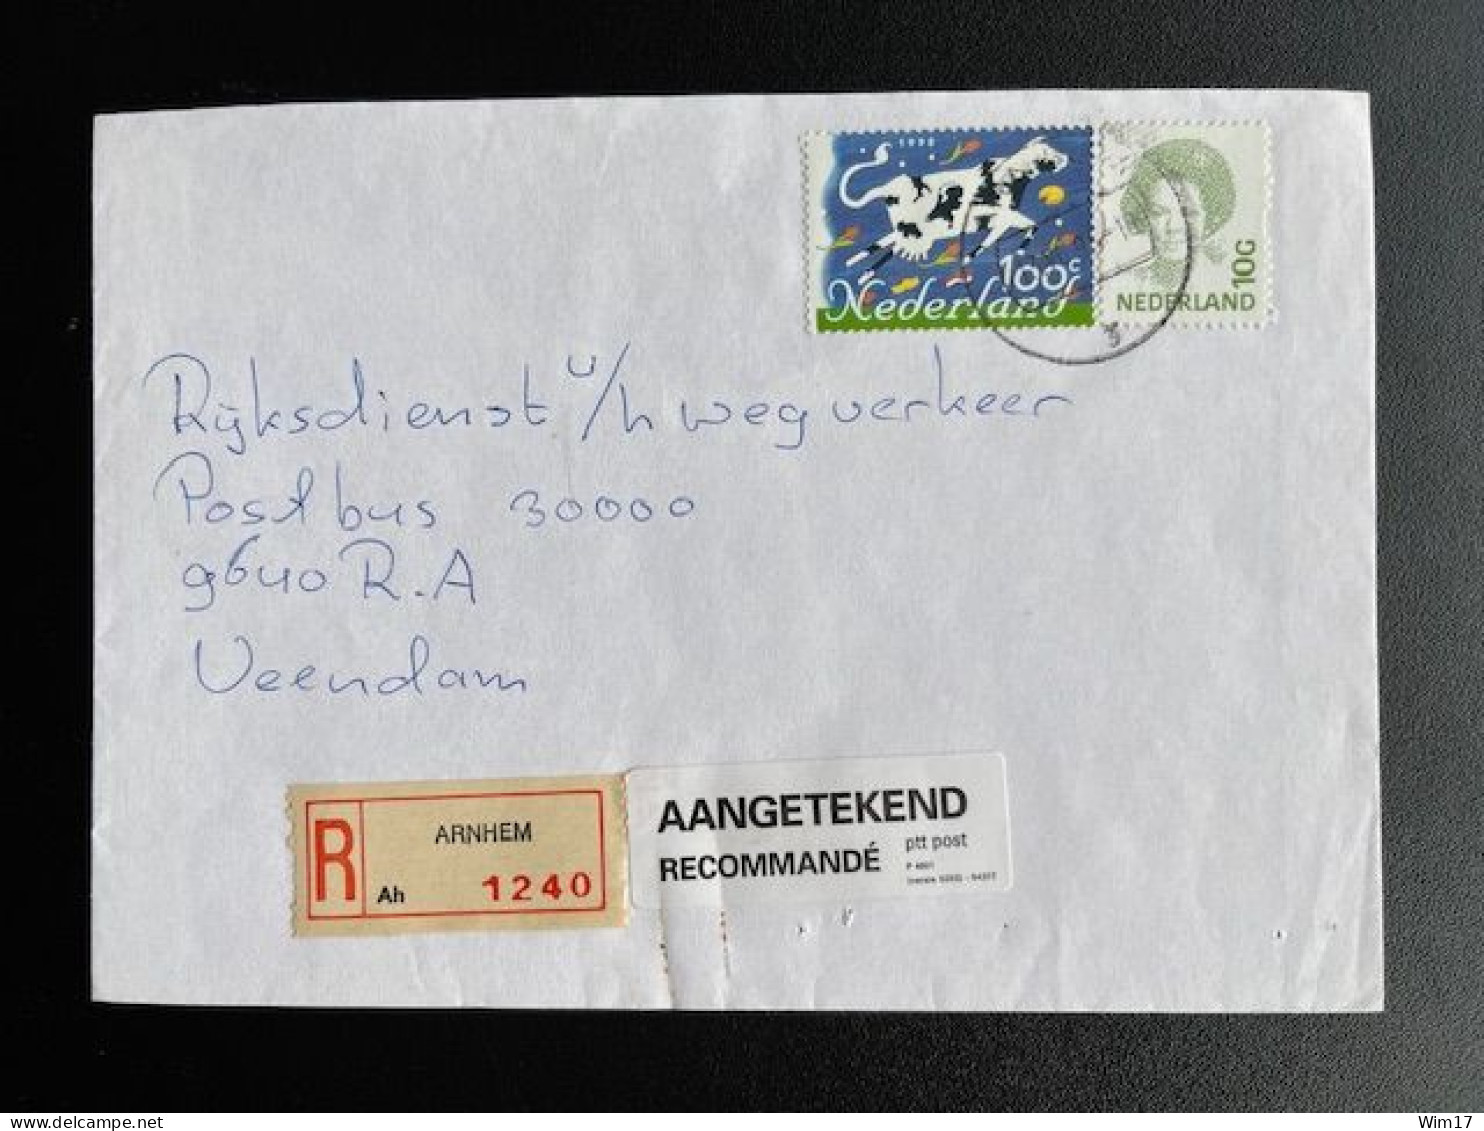 NETHERLANDS 1995 REGISTERED LETTER ARNHEM TO VEENDAM 13-06-1995 NEDERLAND AANGETEKEND - Briefe U. Dokumente